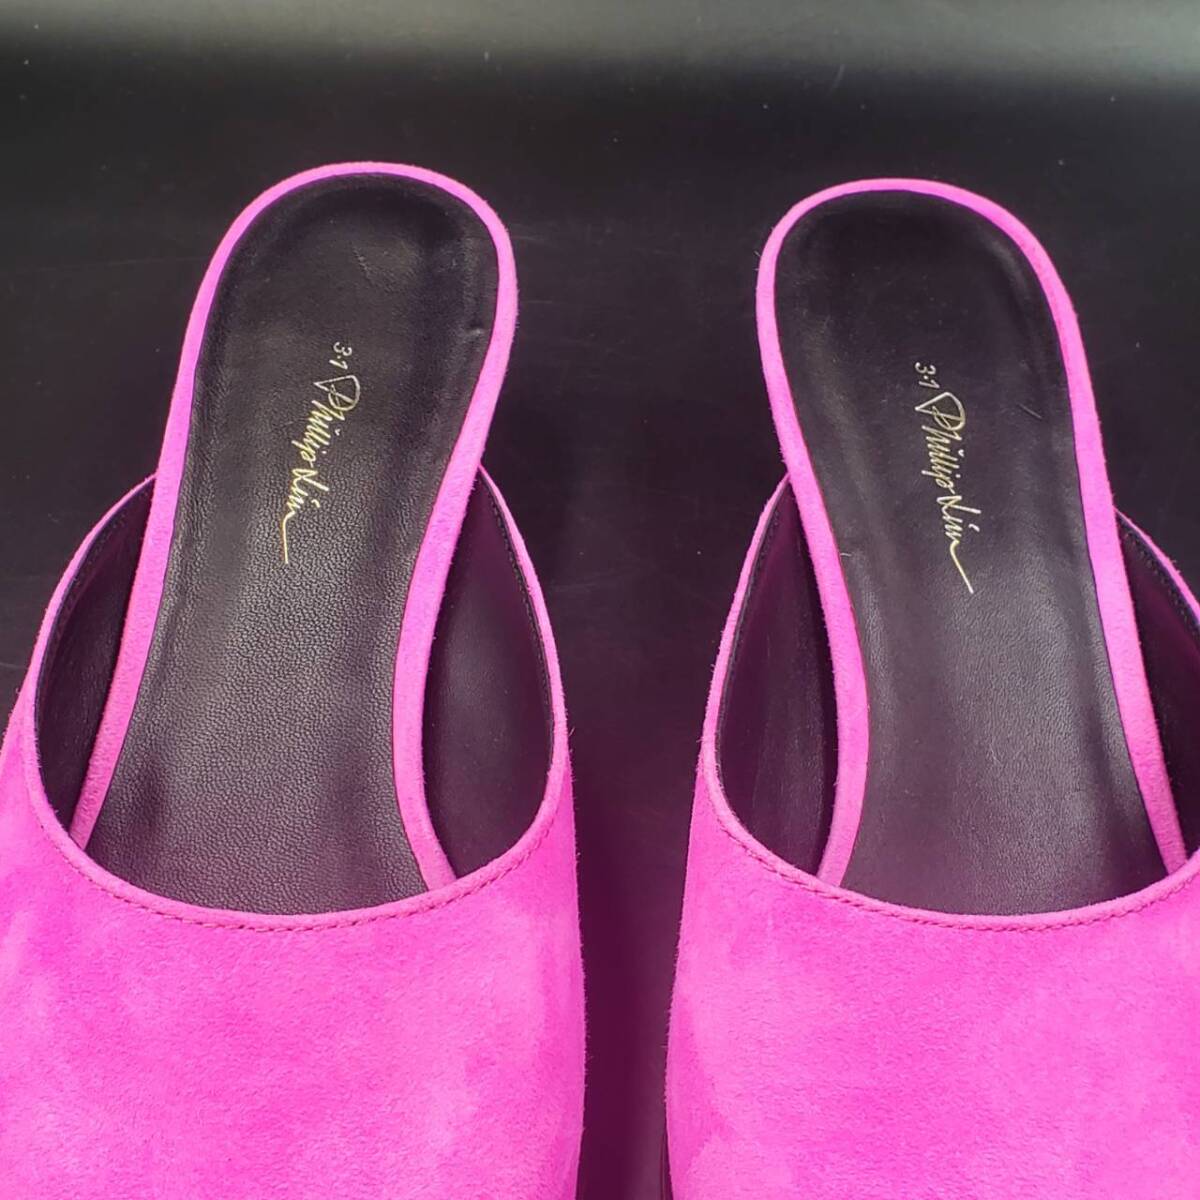 #51 3.1 Phillip Lim フィリップリム フラット ミュール サイズ 39 ピンク PINK サンダル パンプス 本革 靴 アパレル レディース_画像3